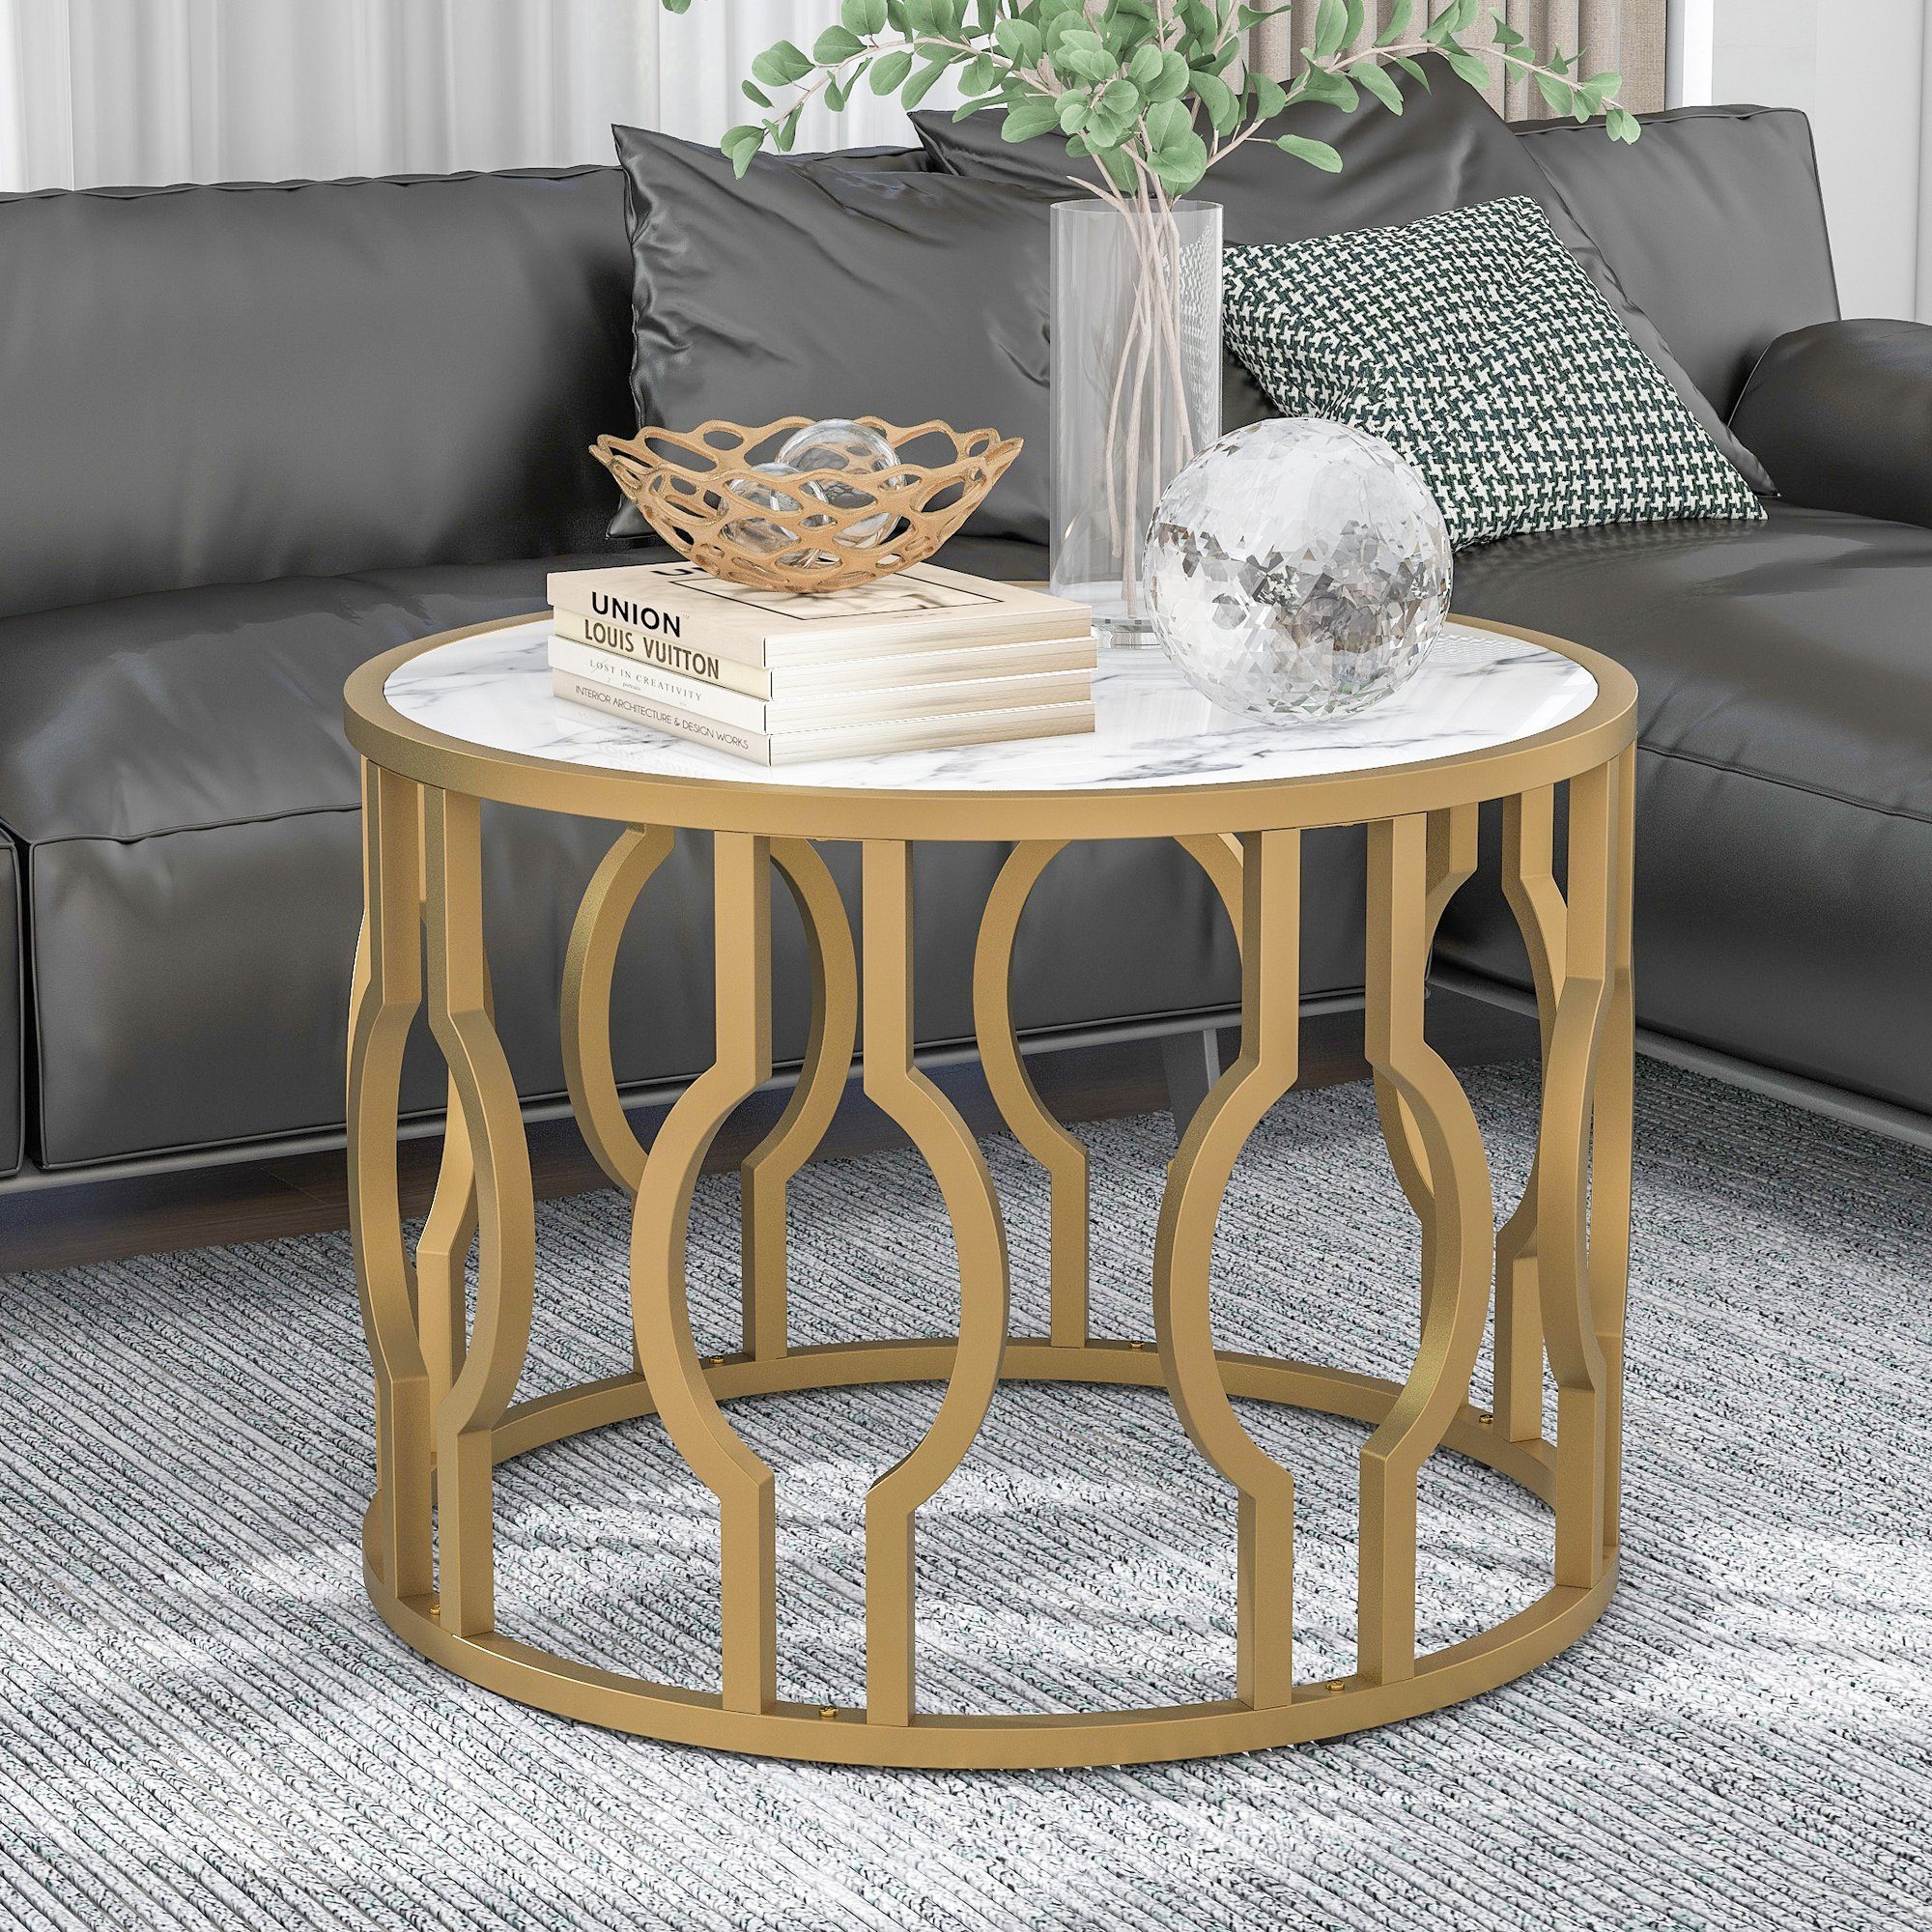 Celya Couchtisch Wohnzimmertisch mit goldfarbenem Stahlrahmen, Sofatisch Rund Tisch Wohnzimmer Beistelltisch 70*46.5cm